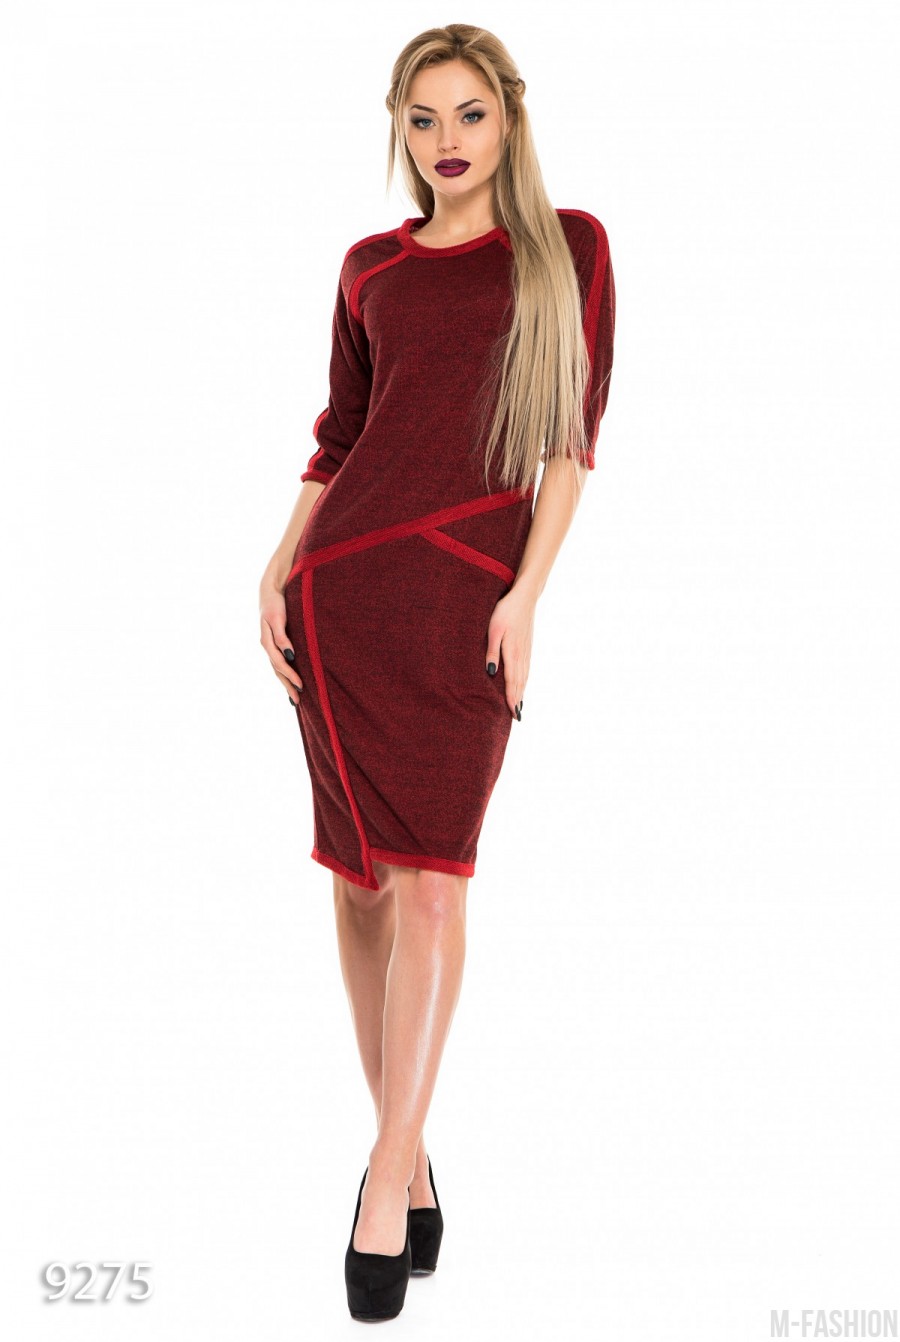 Бордовое асимметричное платье из двунити со красной отделкой - Фото 1